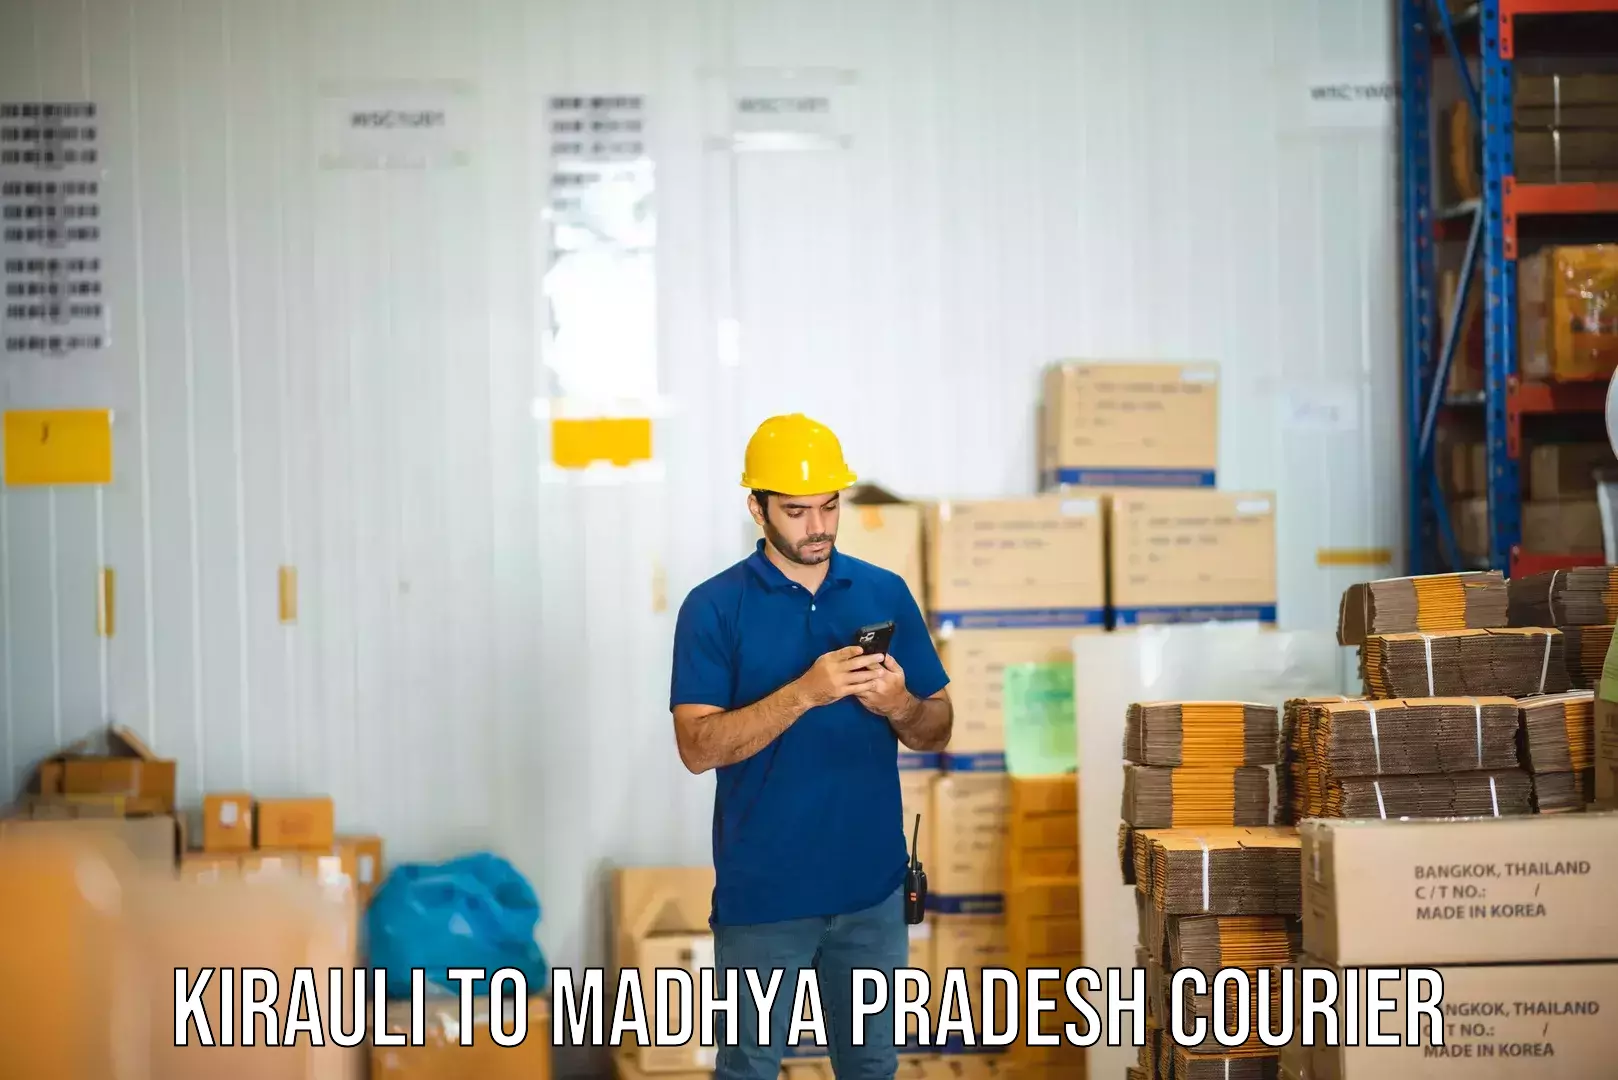 Holiday shipping services Kirauli to Madhya Pradesh